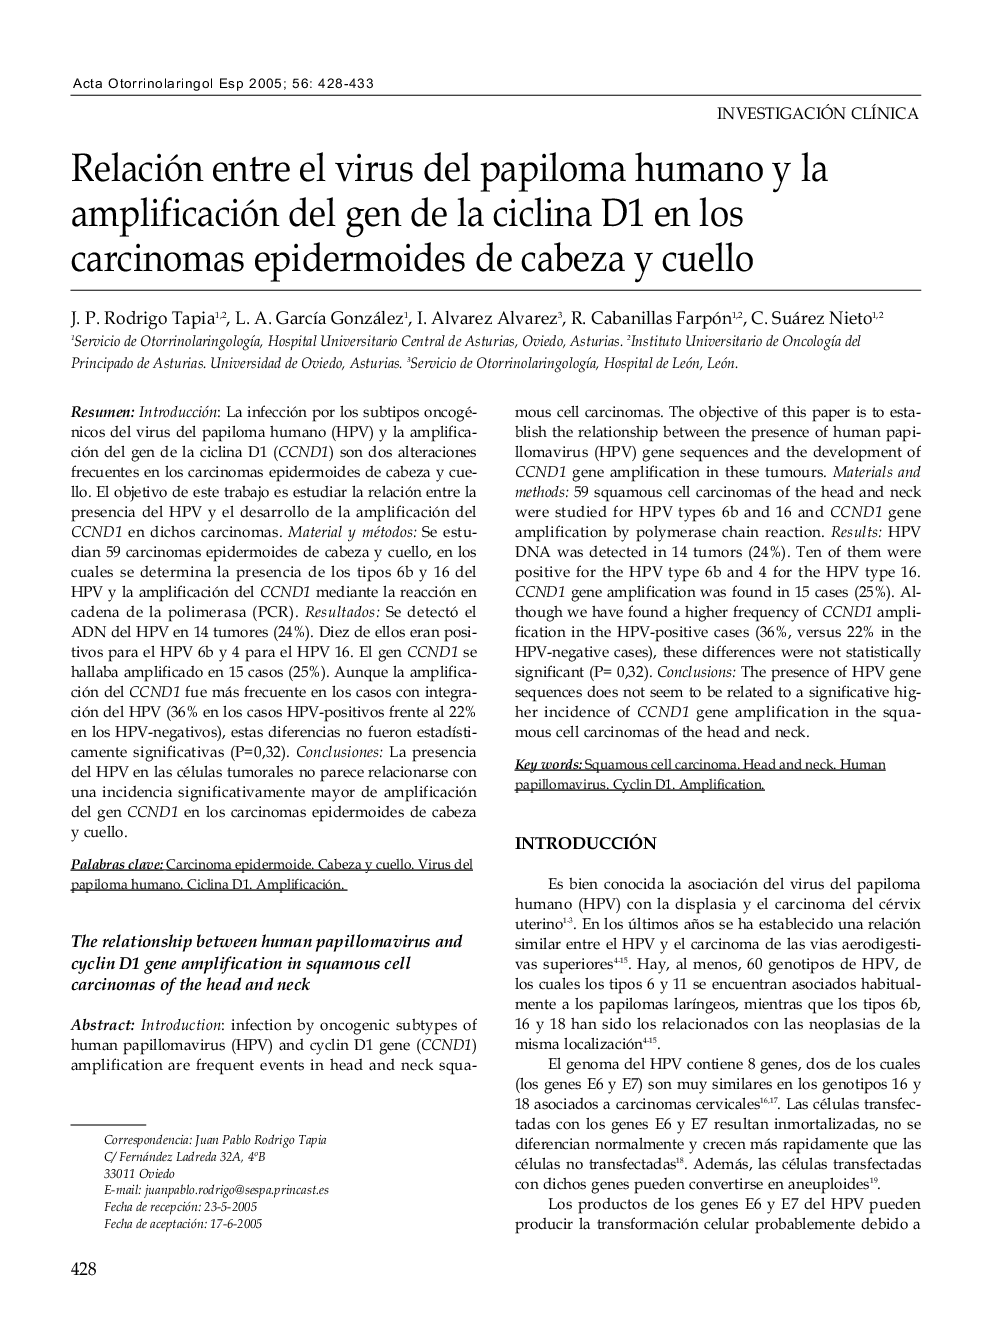 Relación entre el virus del papiloma humano y la amplificación del gen de la ciclina D1 en los carcinomas epidermoides de cabeza y cuello